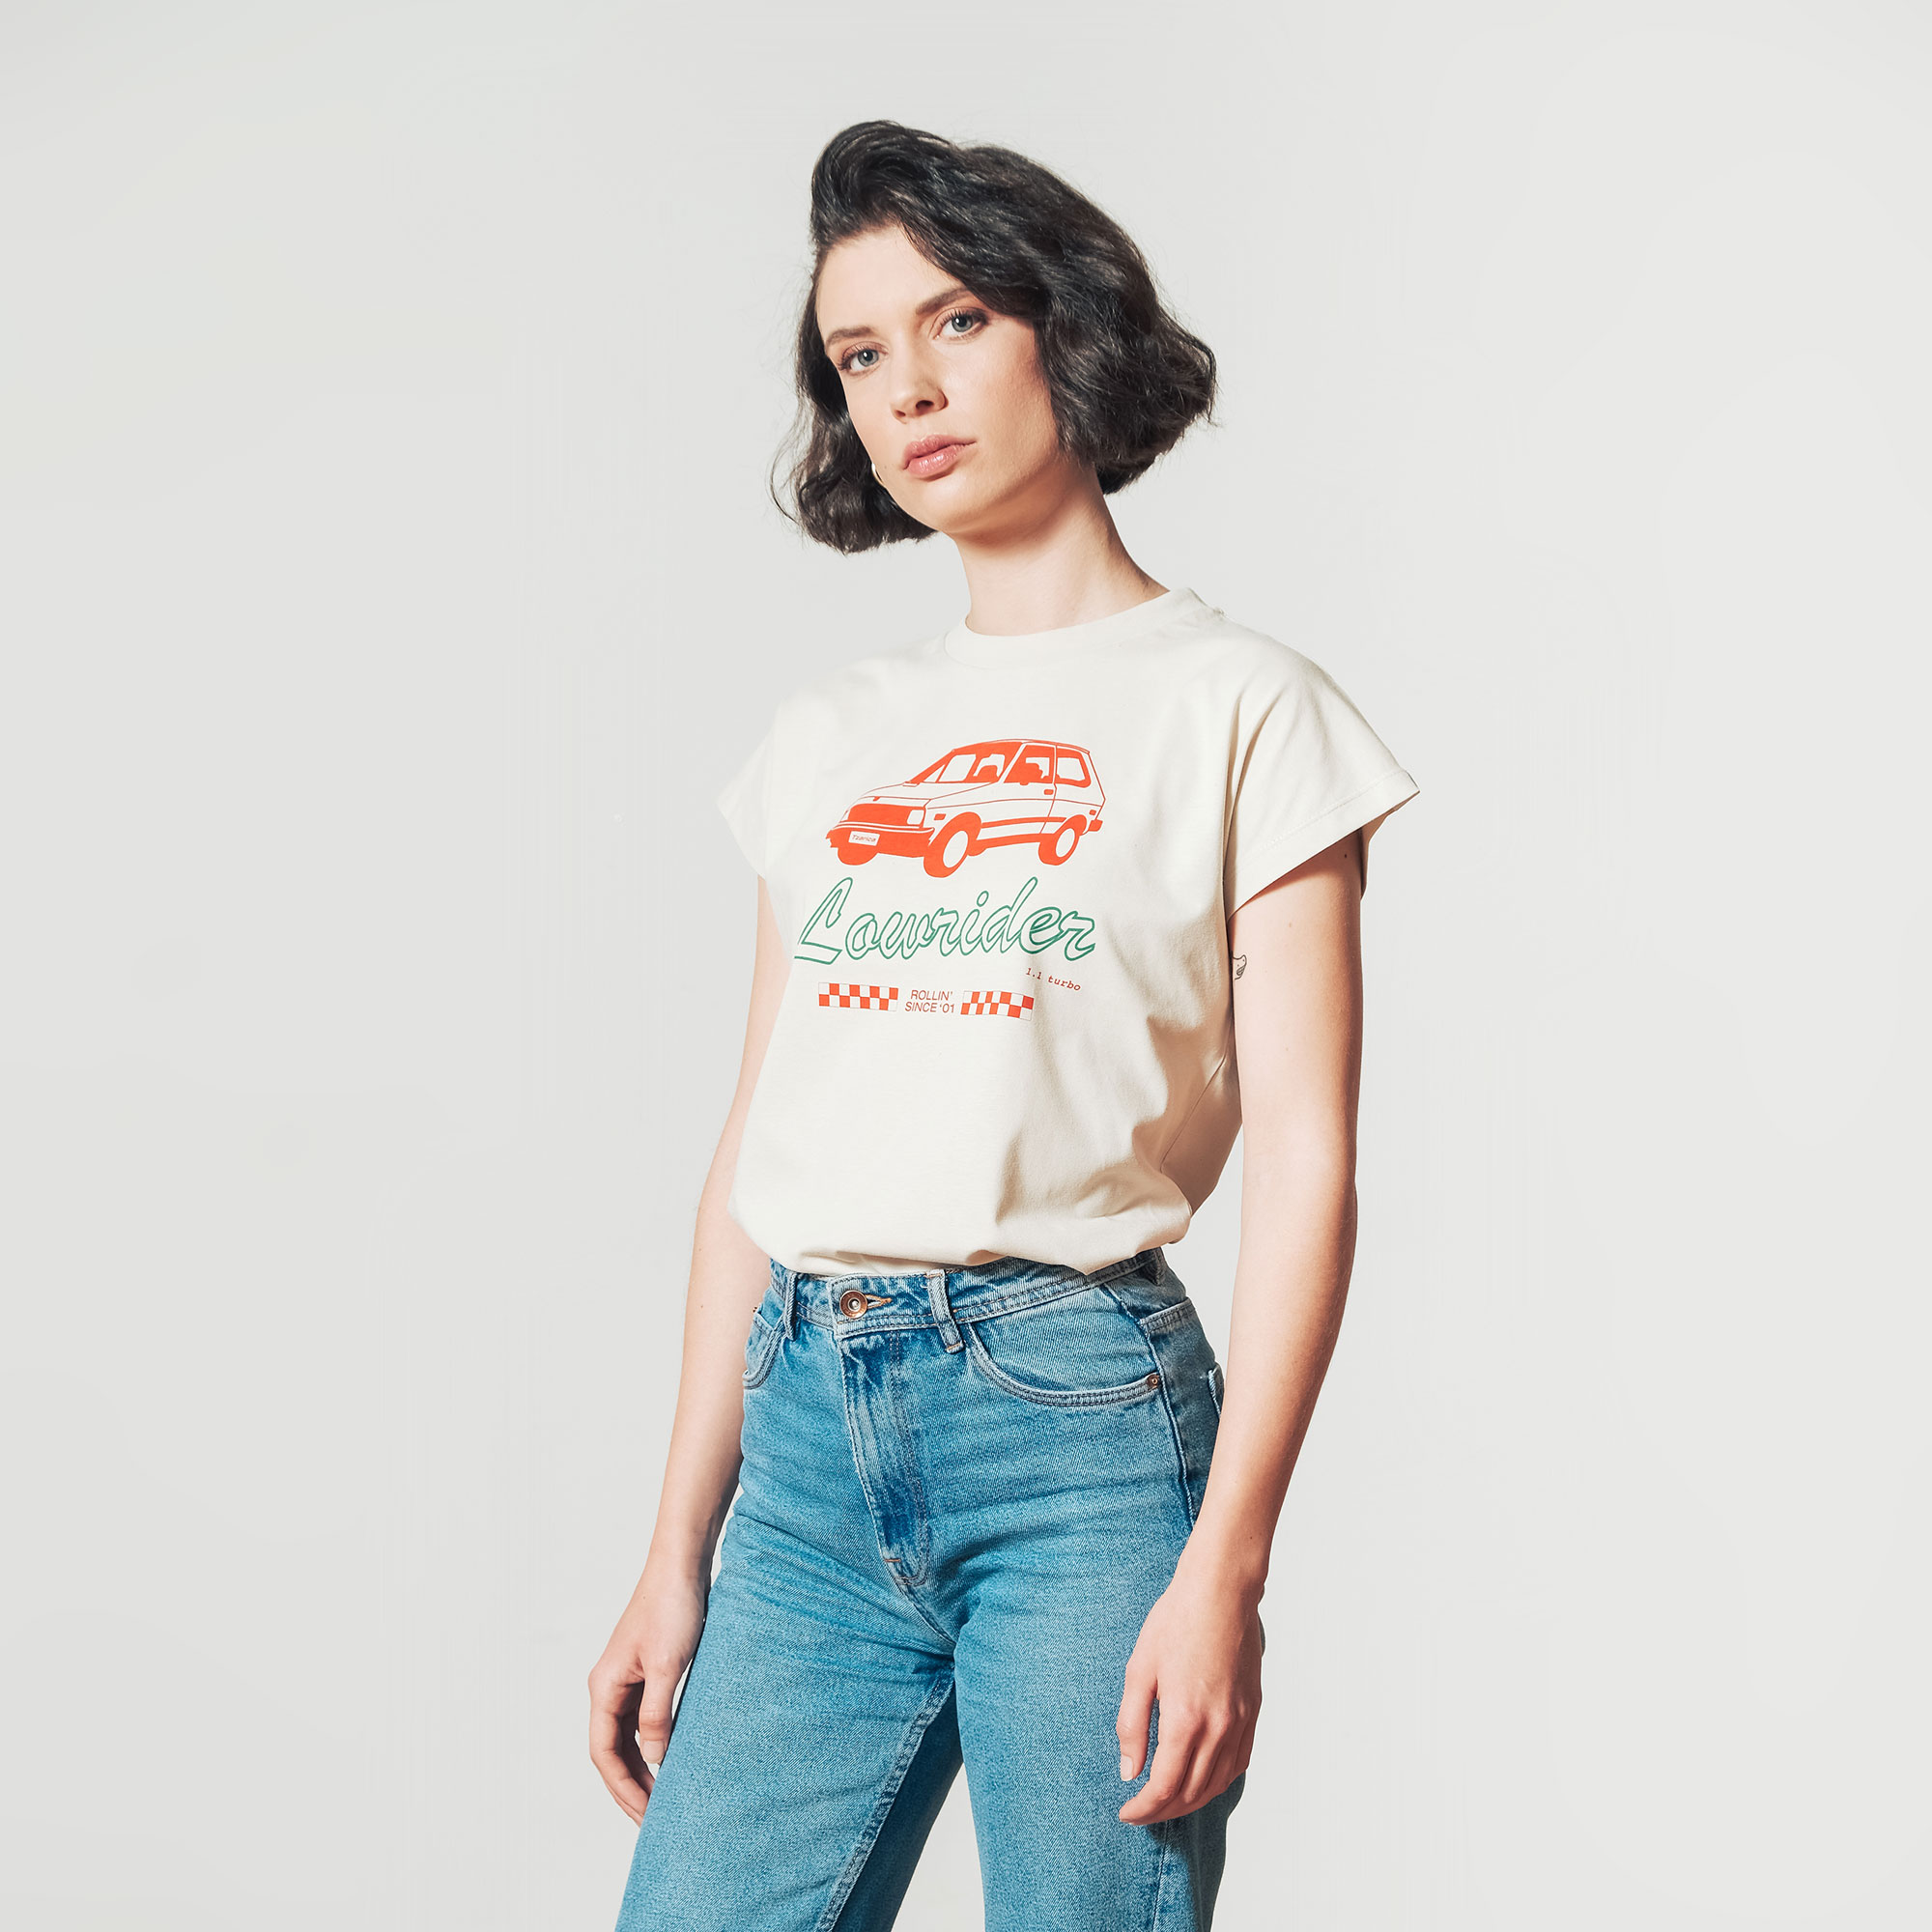 Lowrider, women’s t-shirt – DechkoTzar